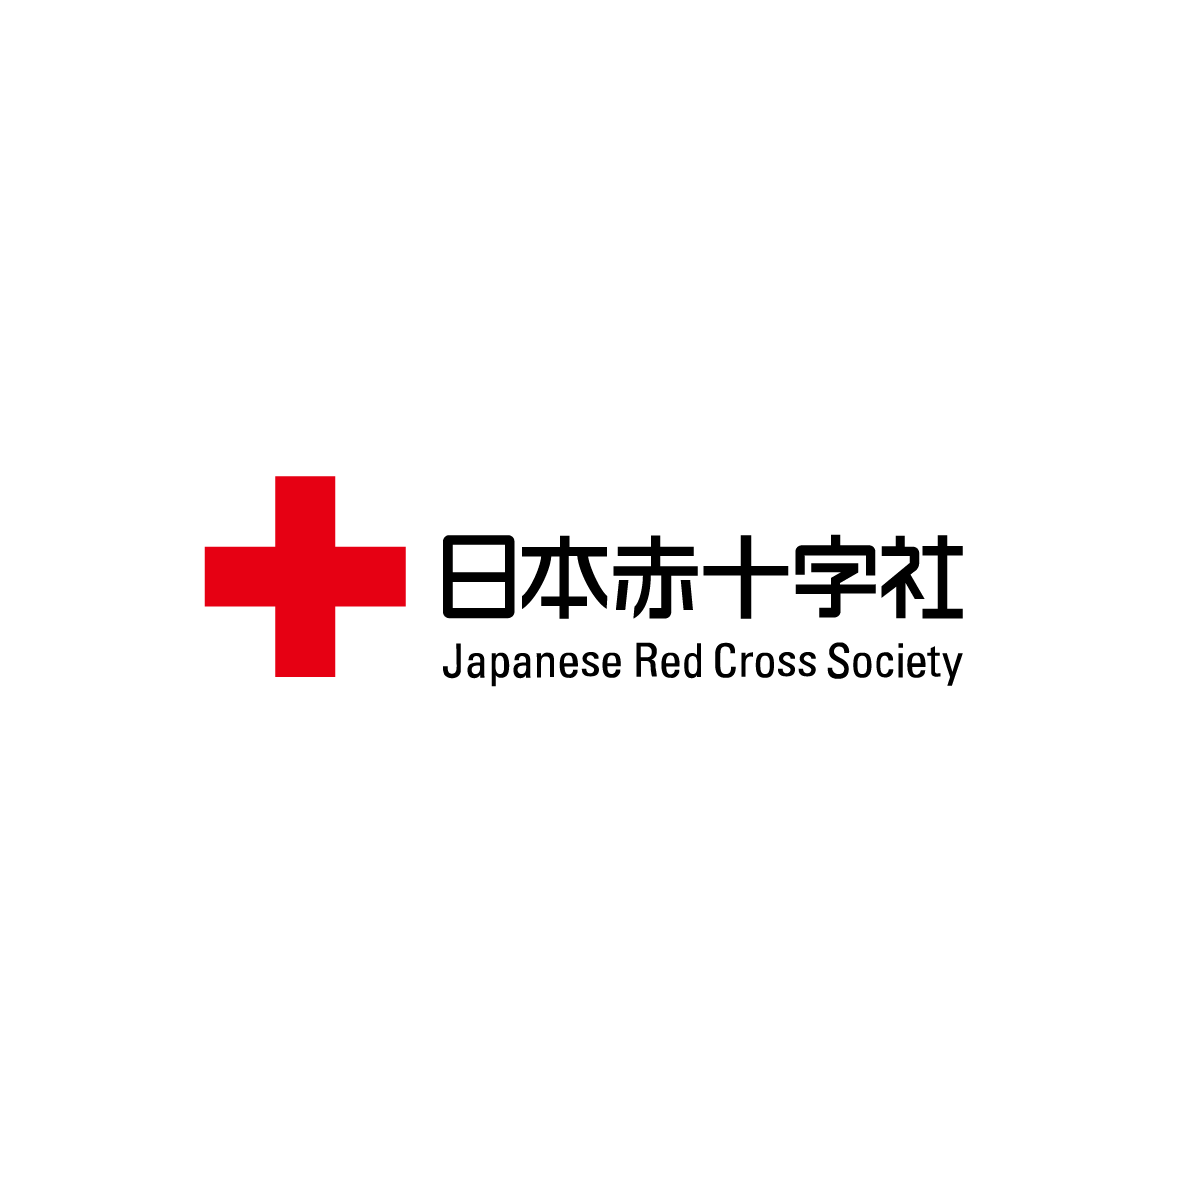 バングラデシュのロヒンギャ難民キャンプでの医療支援、日本から看護師を派遣へ